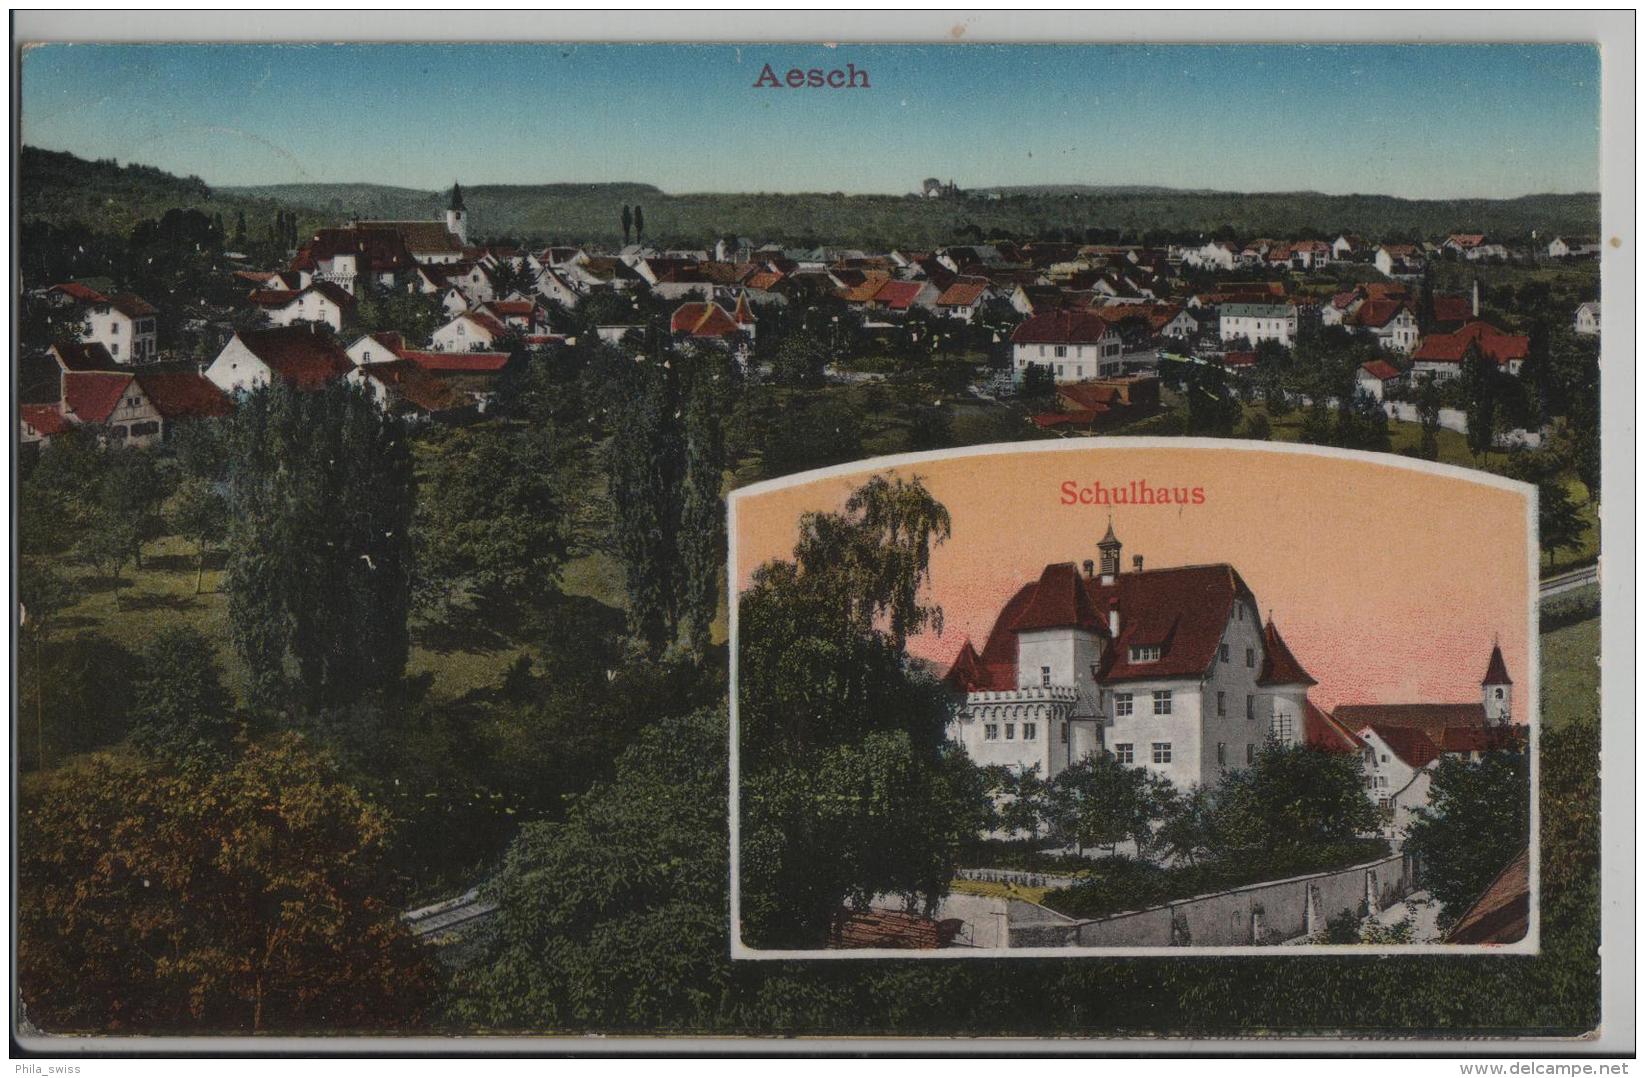 Aesch (Baselland) Schulhaus - Photo: Metz - Aesch